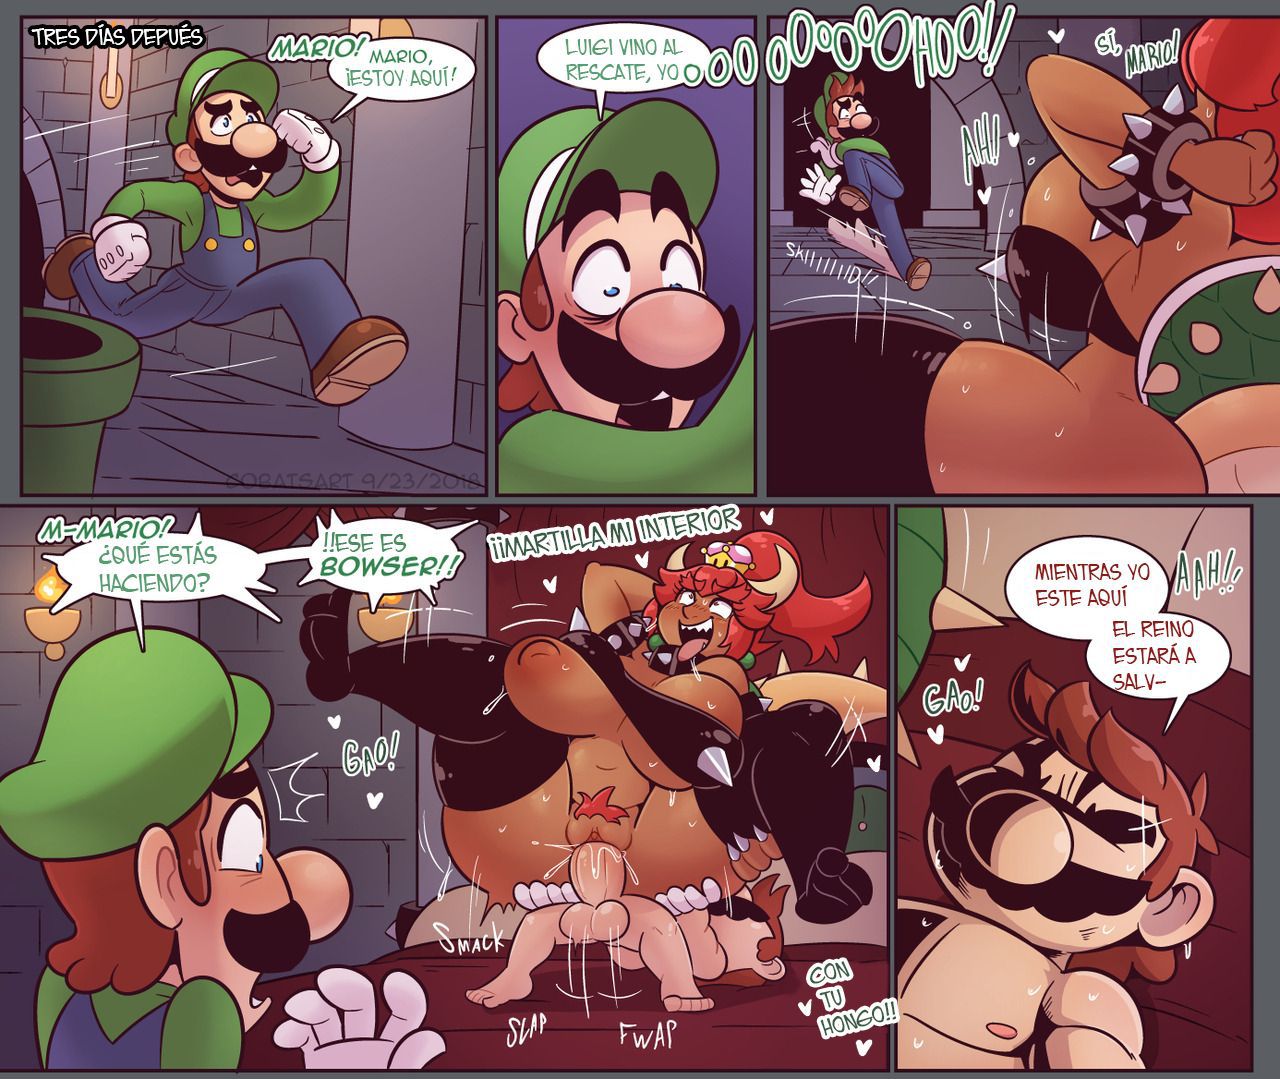 [Cobat] - Super Mario Bros. Una noche de Bowsette 2